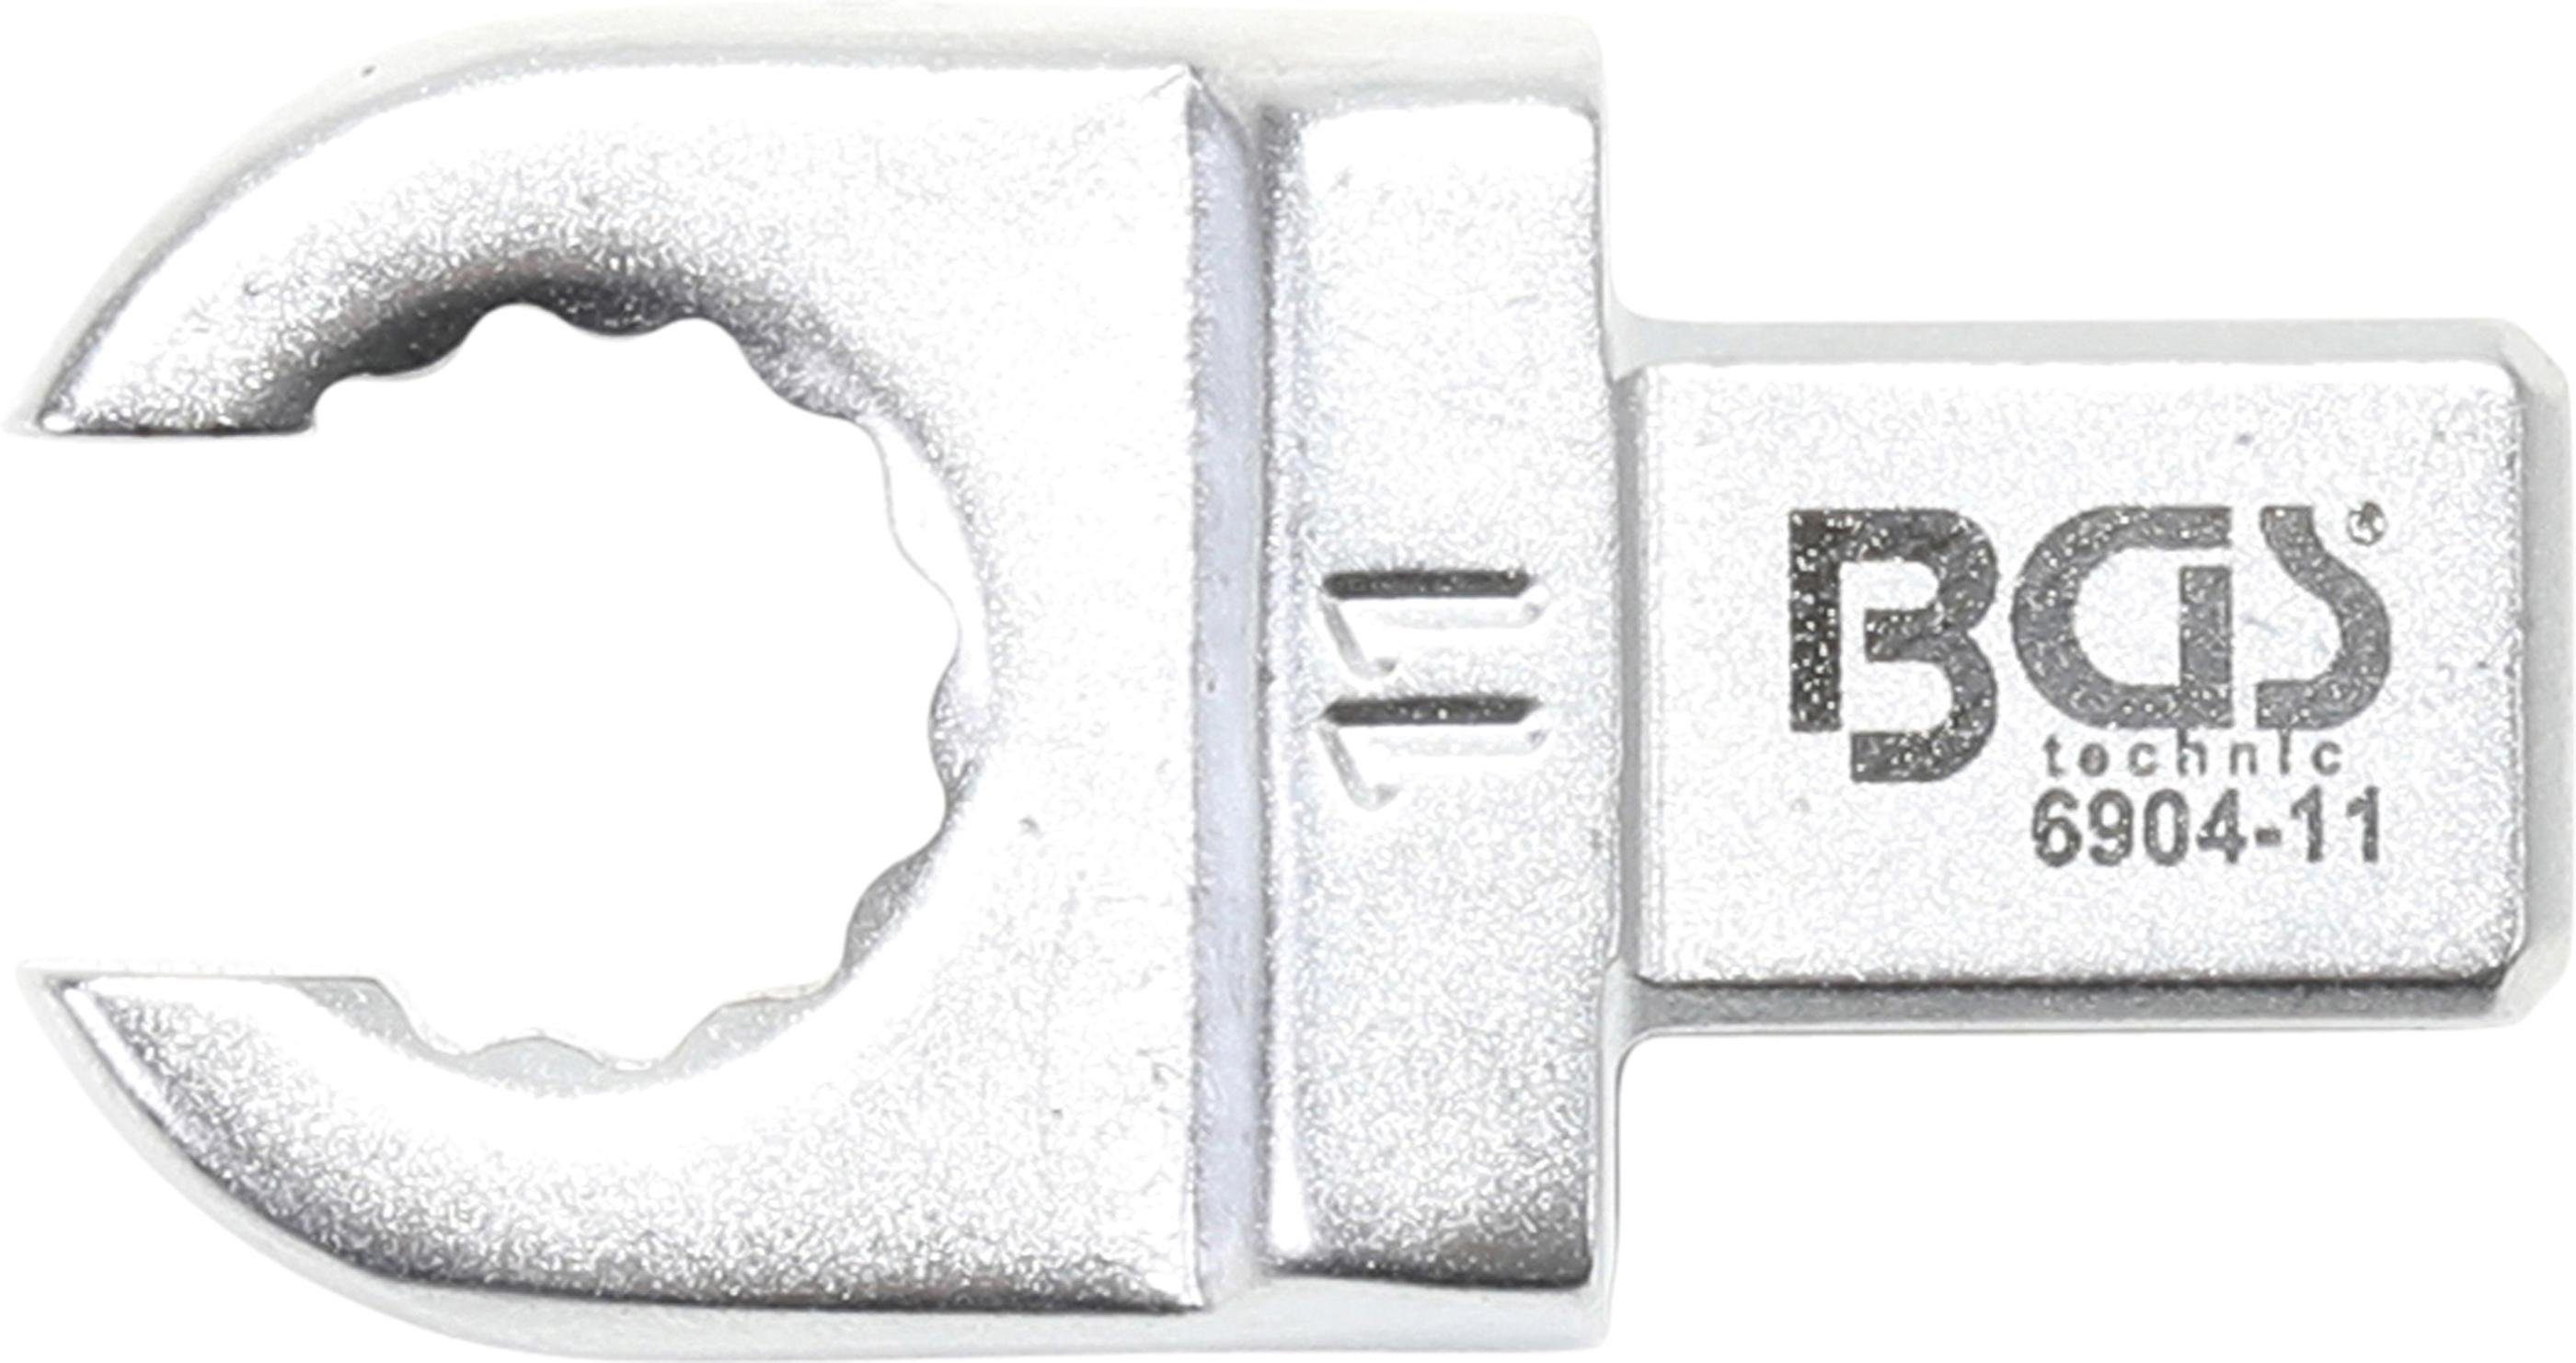 BGS technic Ausstechform Einsteck-Ringschlüssel, offen, 11 mm, Aufnahme 9 x 12 mm | Ausstechformen